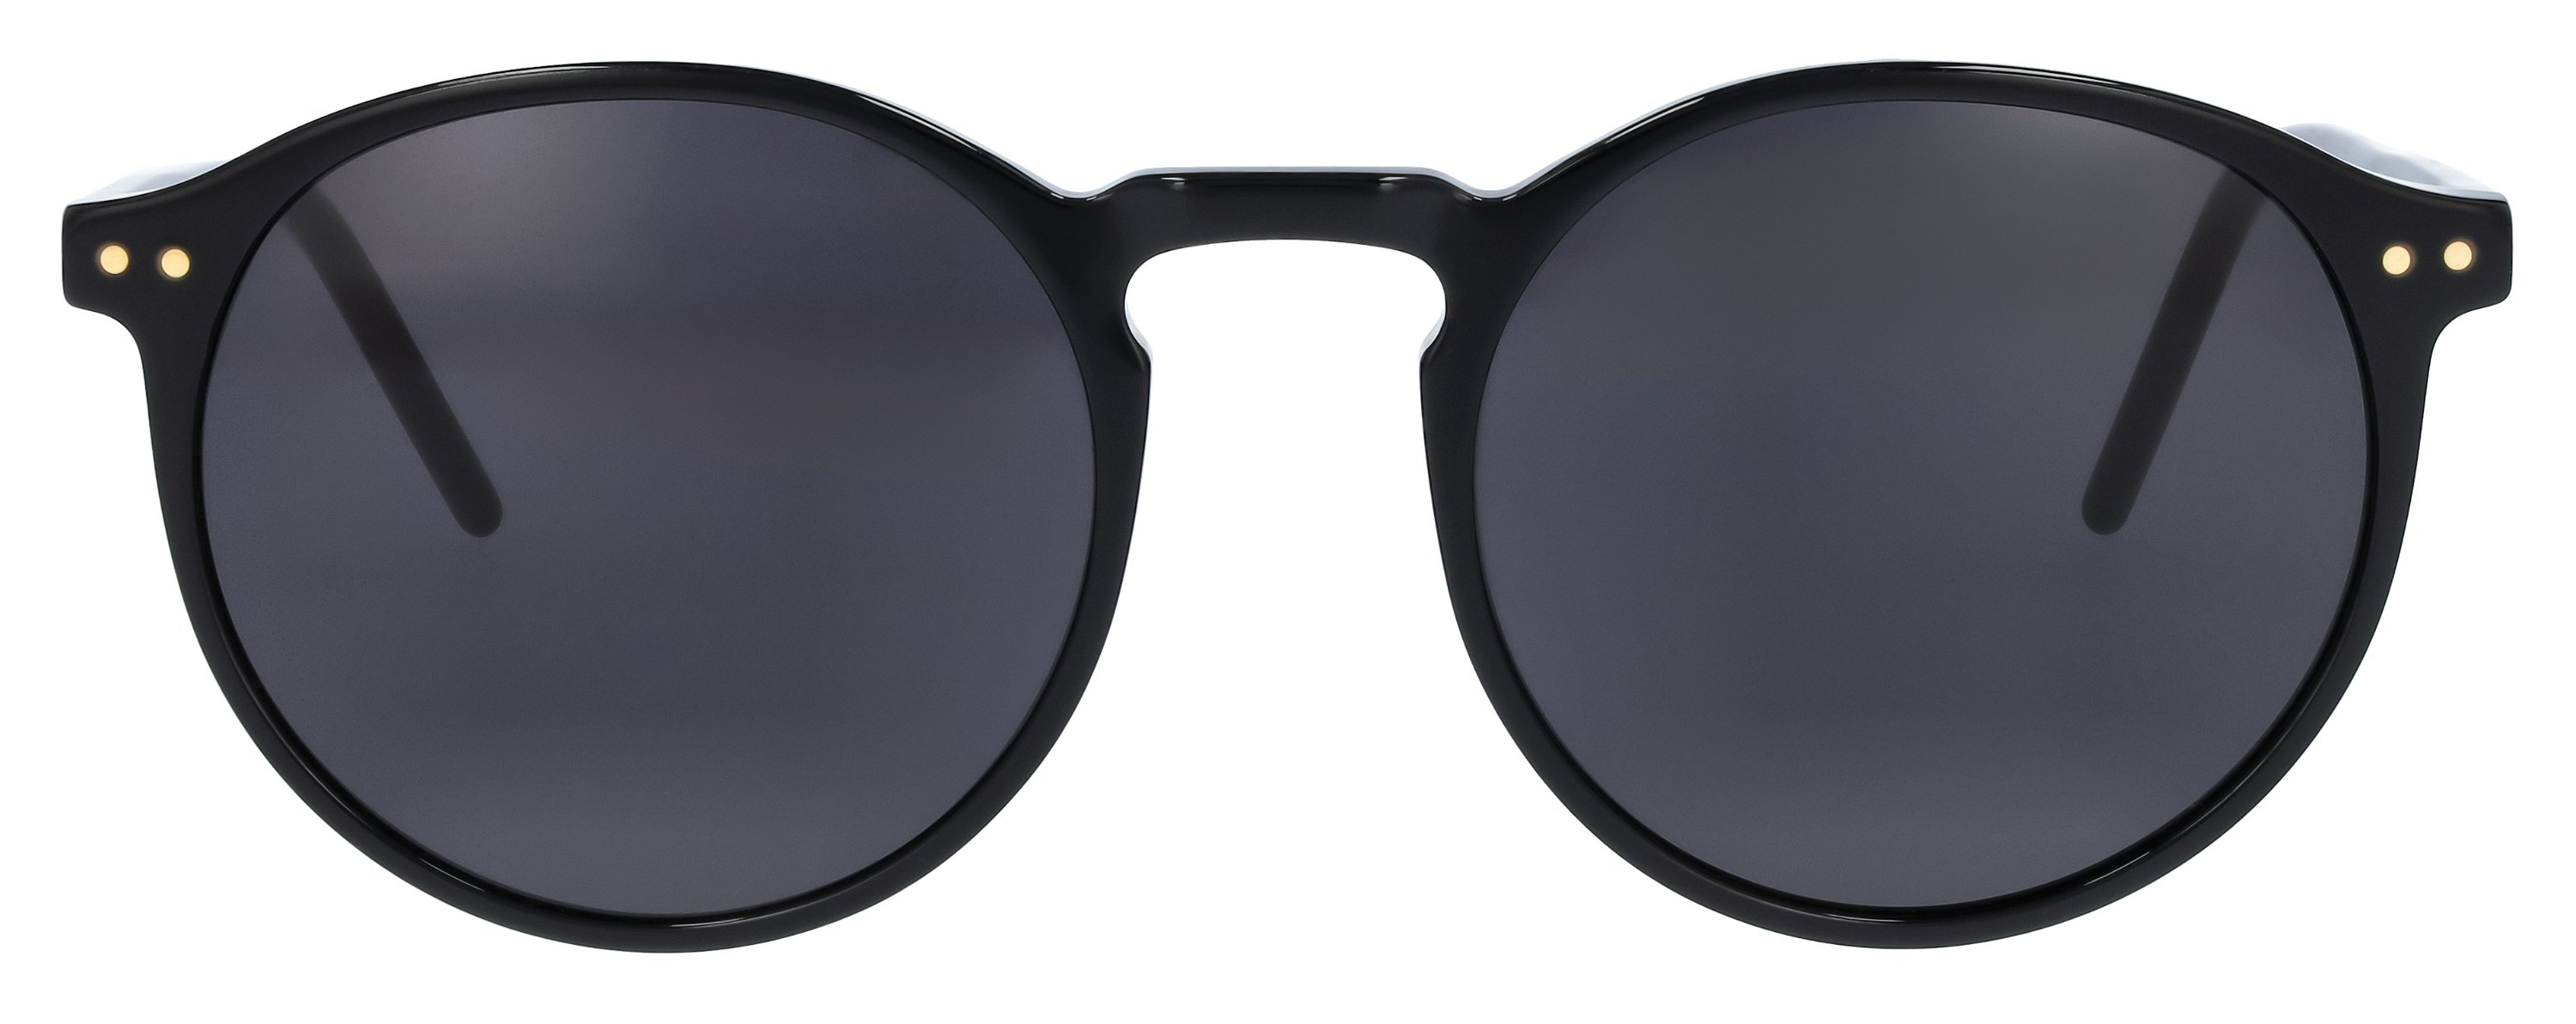 Das Bild zeigt die Sonnenbrille 141221 von der Marke Abele Optik in schwarz.